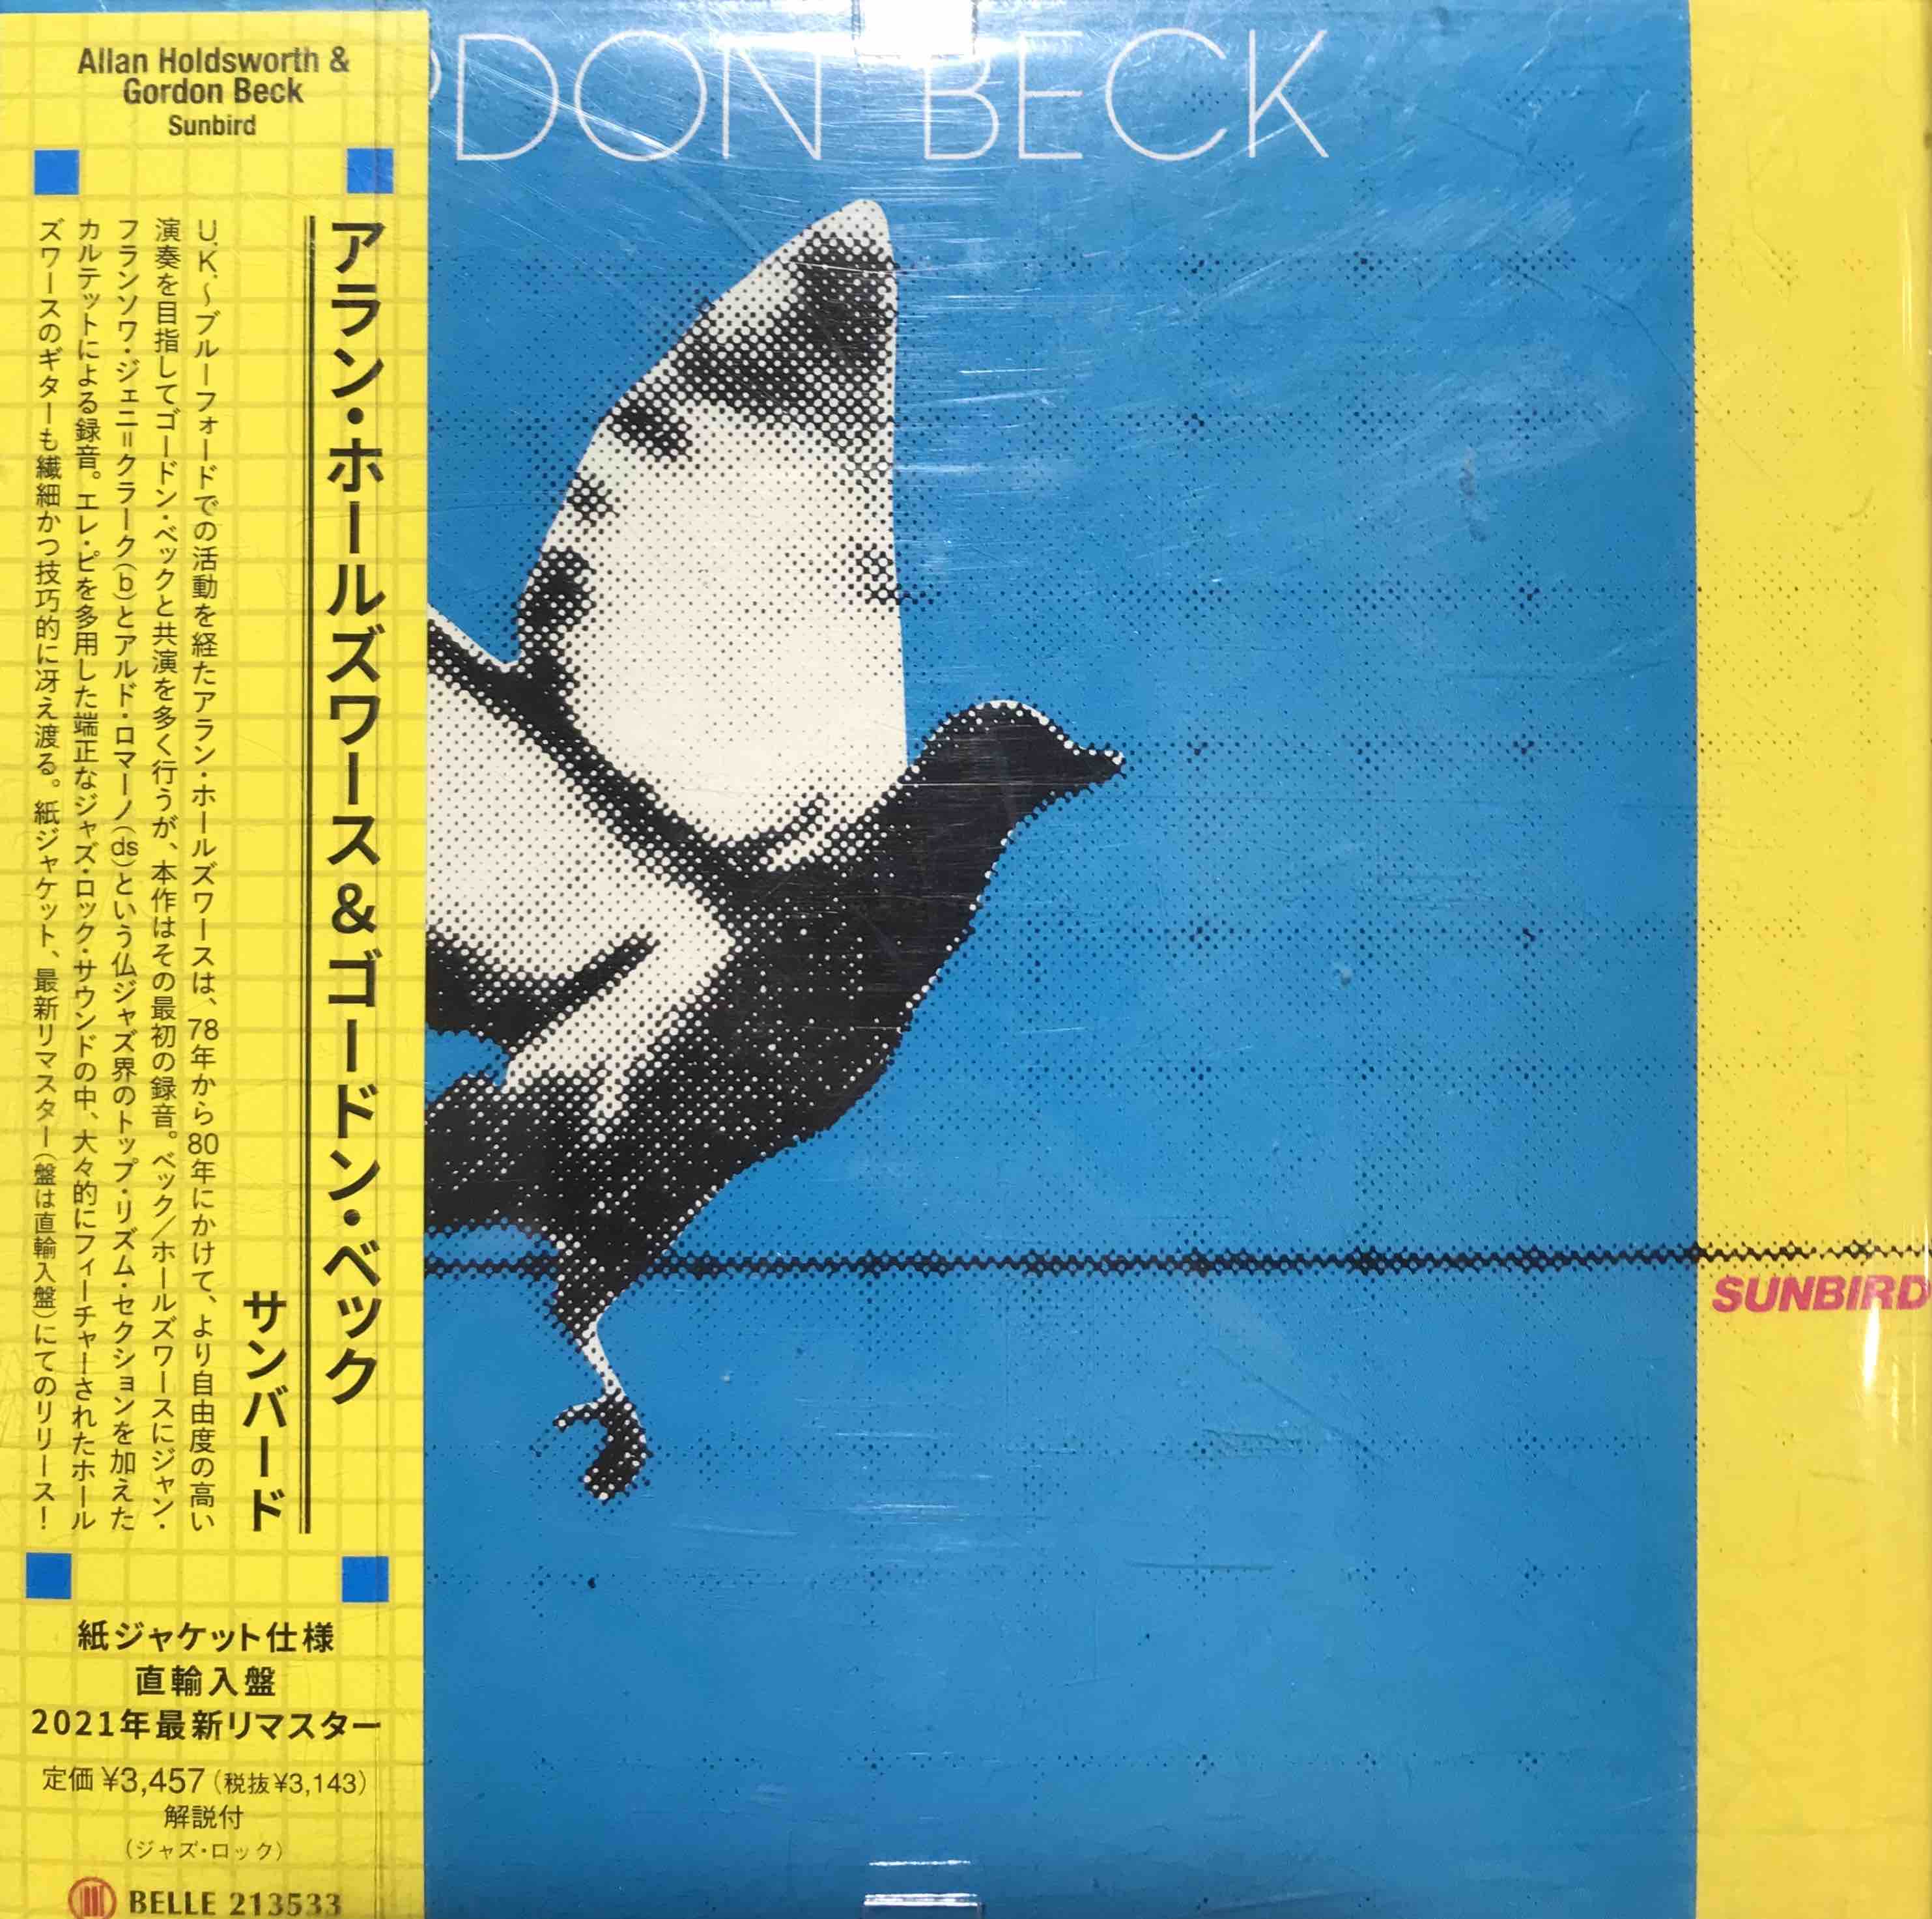 Gordon Beck ‎– Sunbird